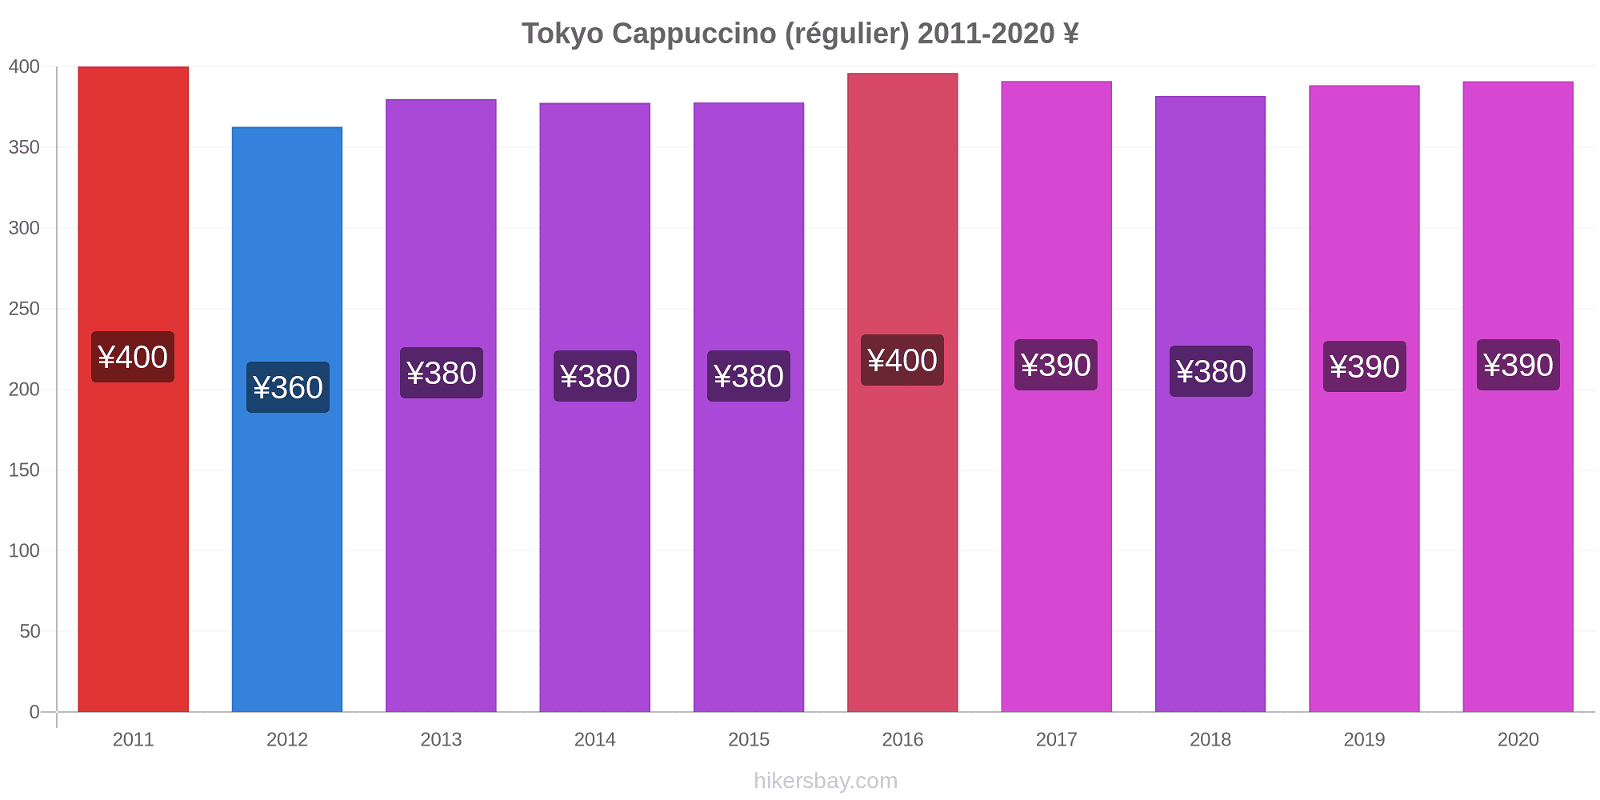 Tokyo changements de prix Cappuccino (régulier) hikersbay.com